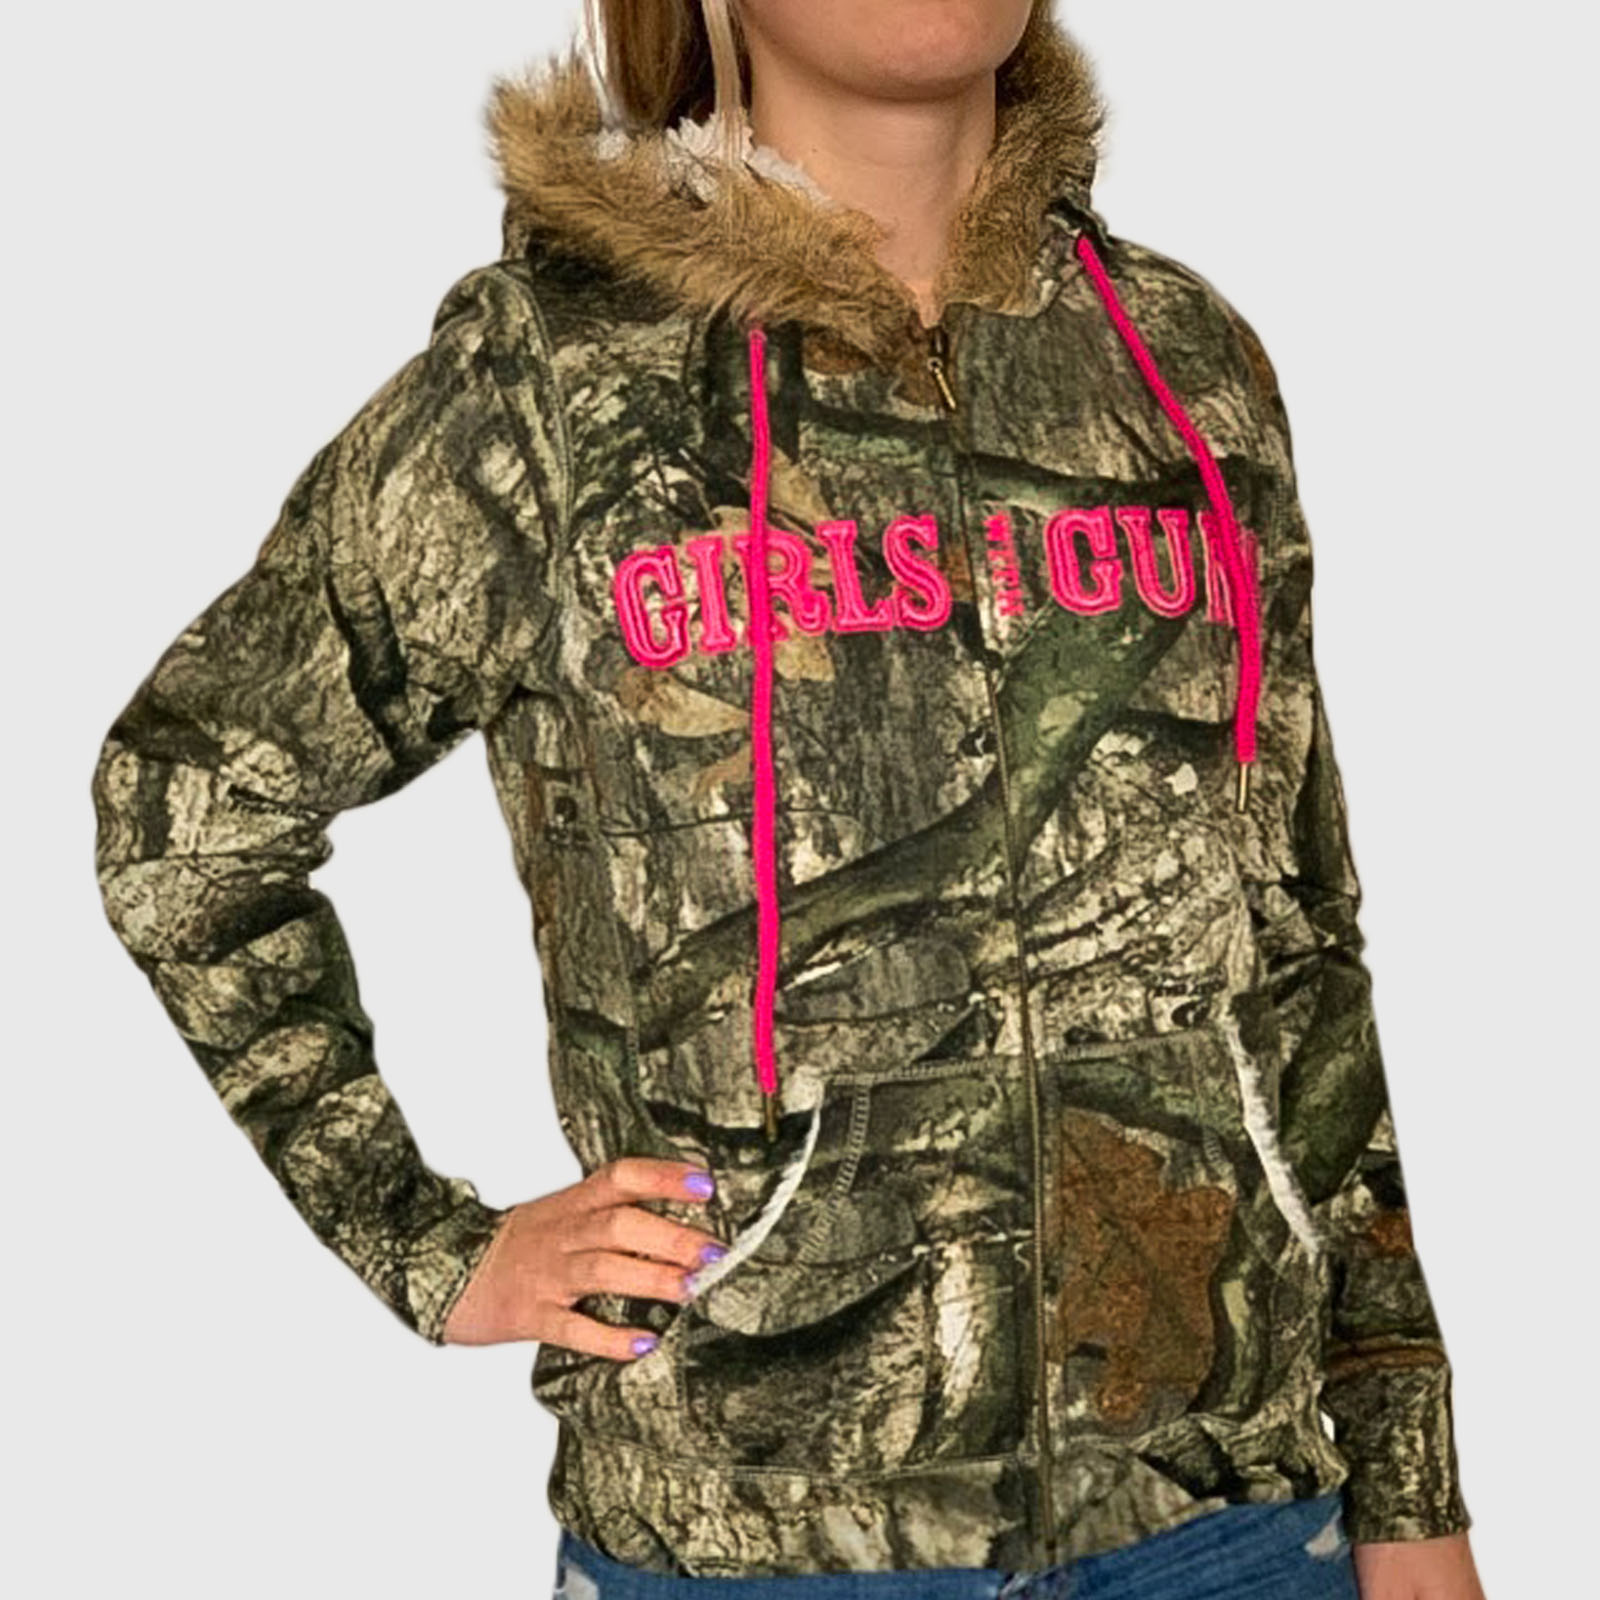 Недорогие женские куртки толстовки Girls with guns в камуфляжной расцветке